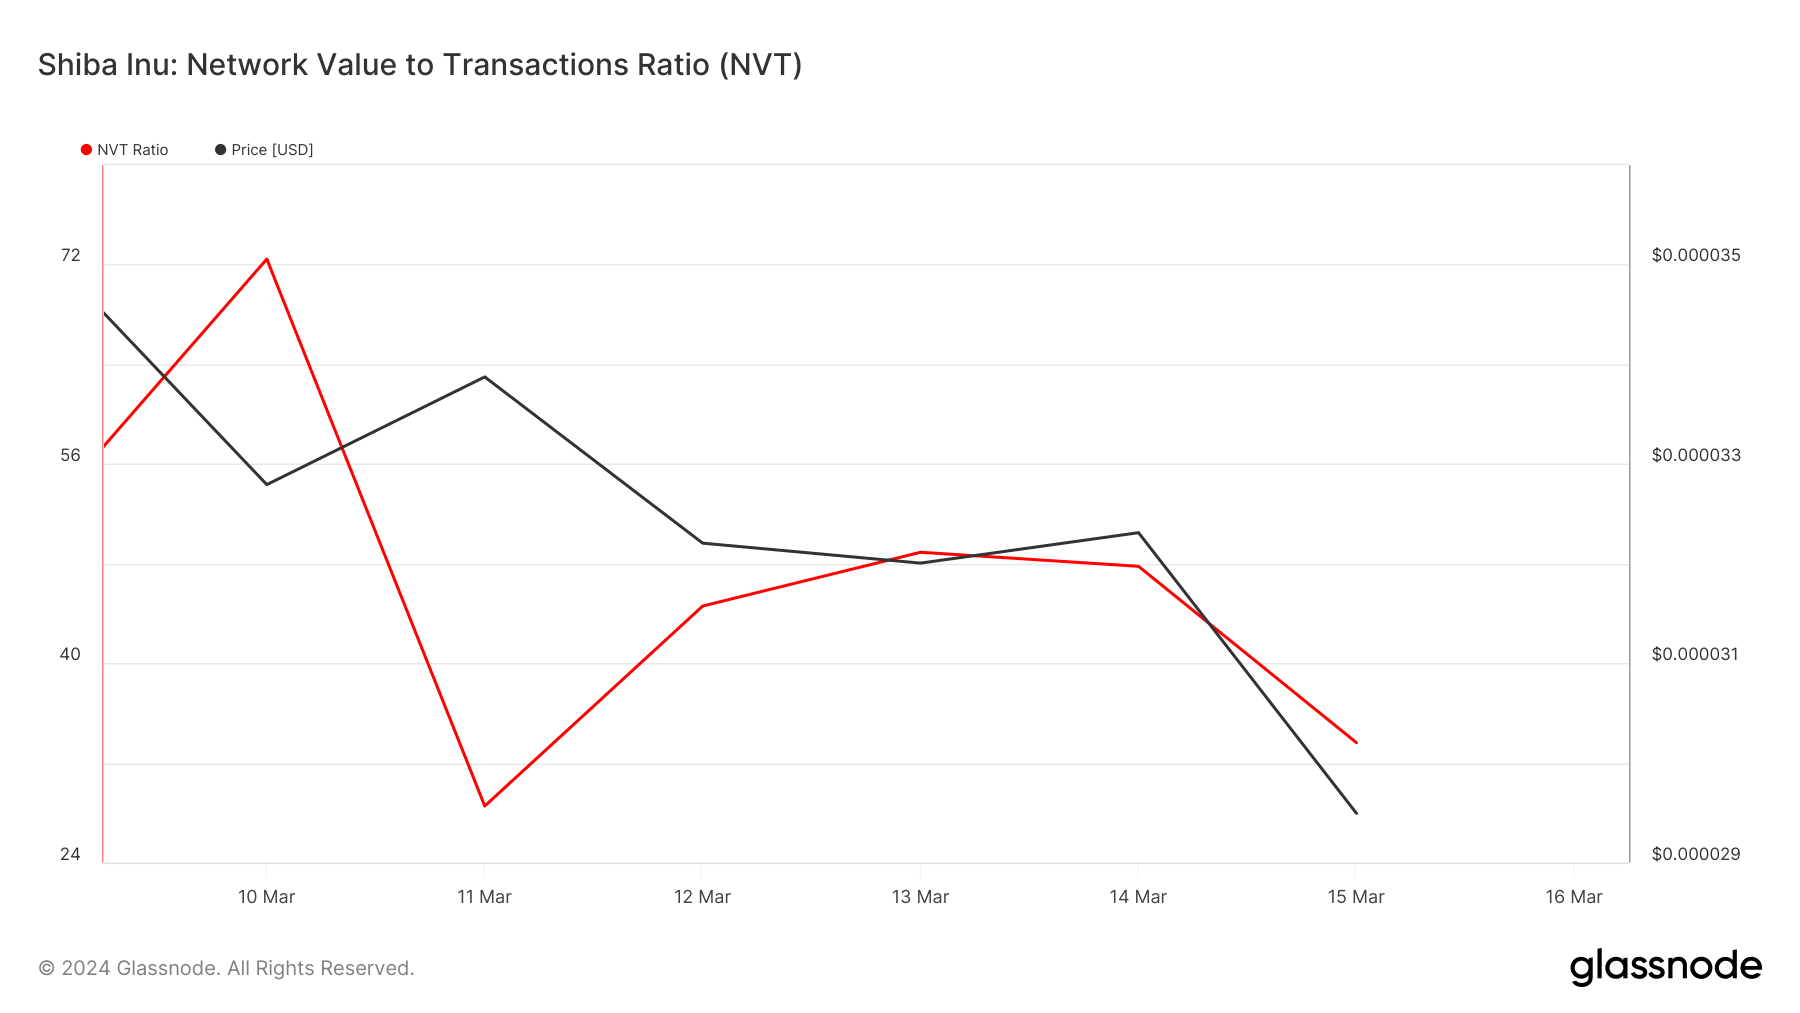 SHIB's NVT Ratio dropping